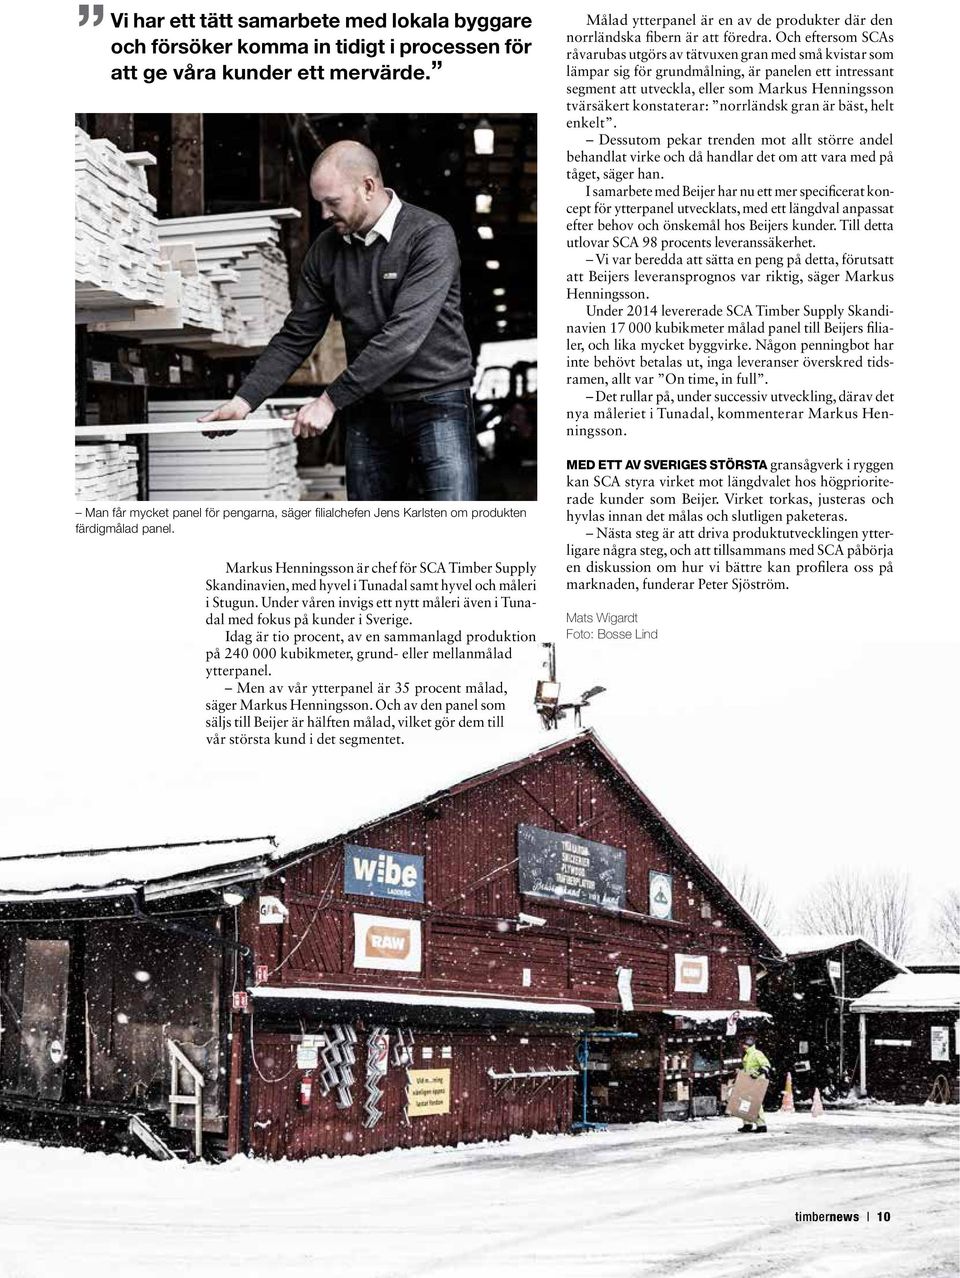 Markus Henningsson är chef för SCA Timber Supply Skandinavien, med hyvel i Tunadal samt hyvel och måleri i Stugun. Under våren invigs ett nytt måleri även i Tunadal med fokus på kunder i Sverige.